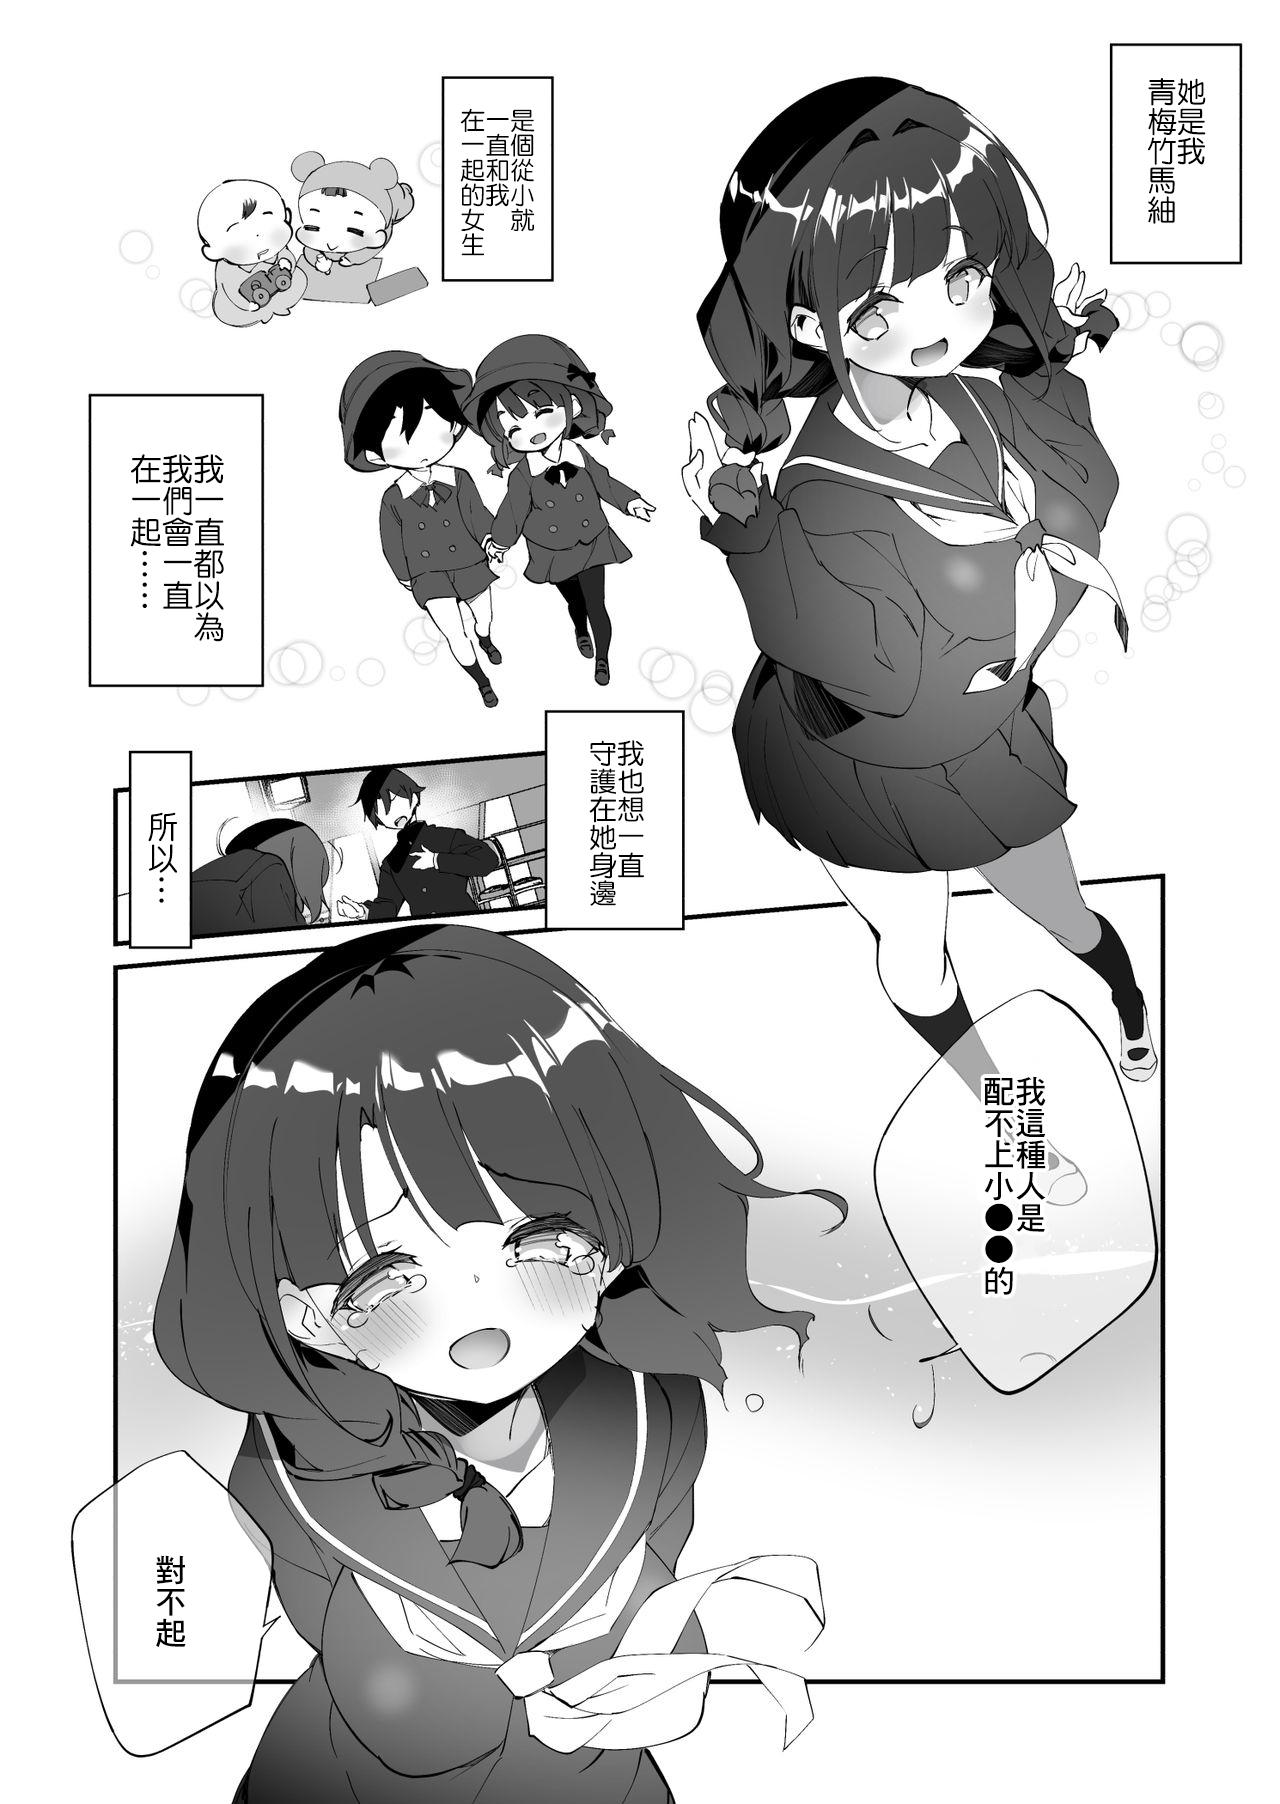 Nasty Hontou ni Kimochi ga Ii no wa Kojirase Osananajimi to no Uwakix - Original Tanned - Page 7